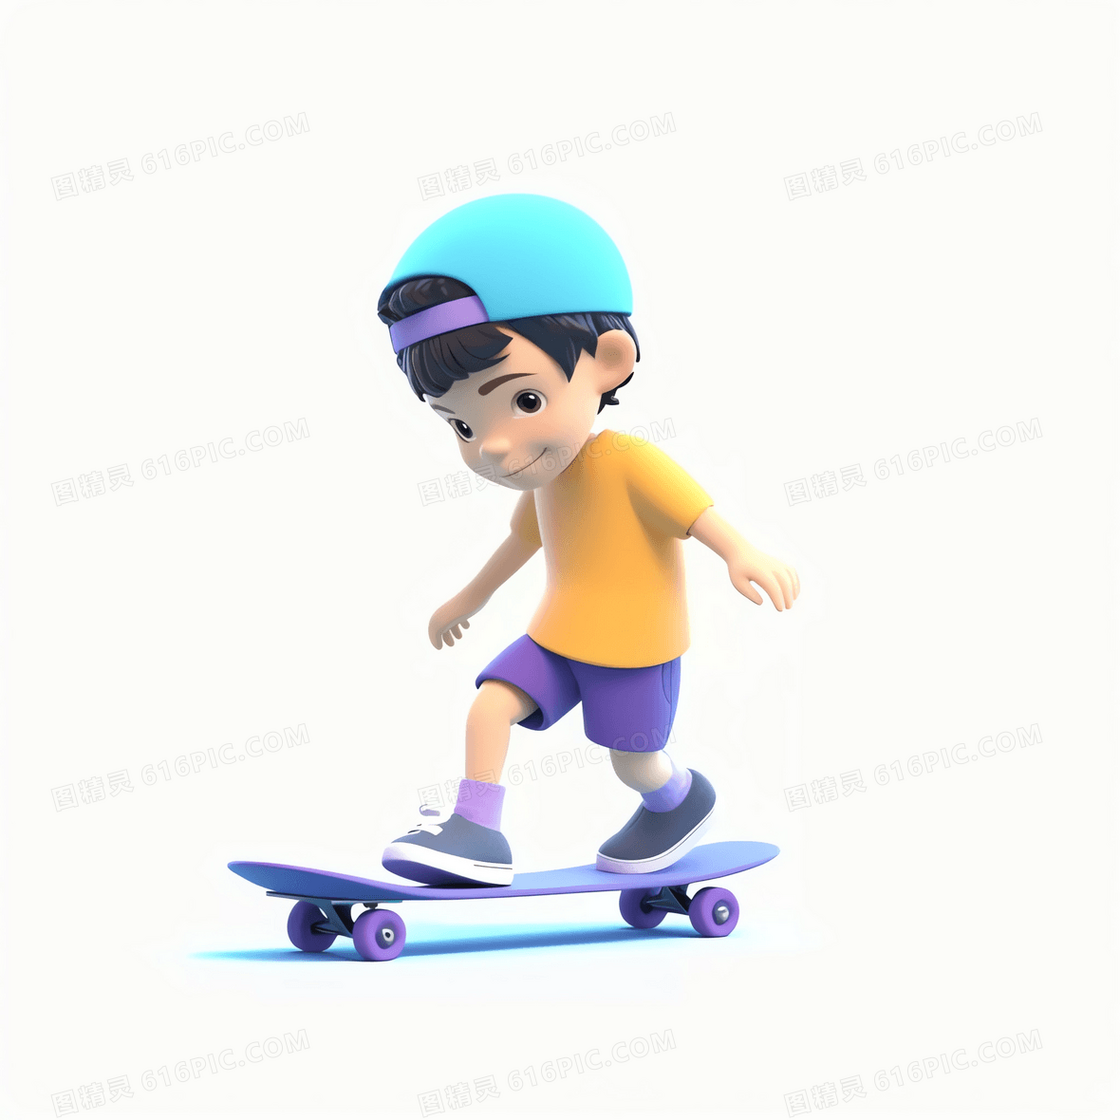 在笑着玩滑板的可爱男孩3D模型